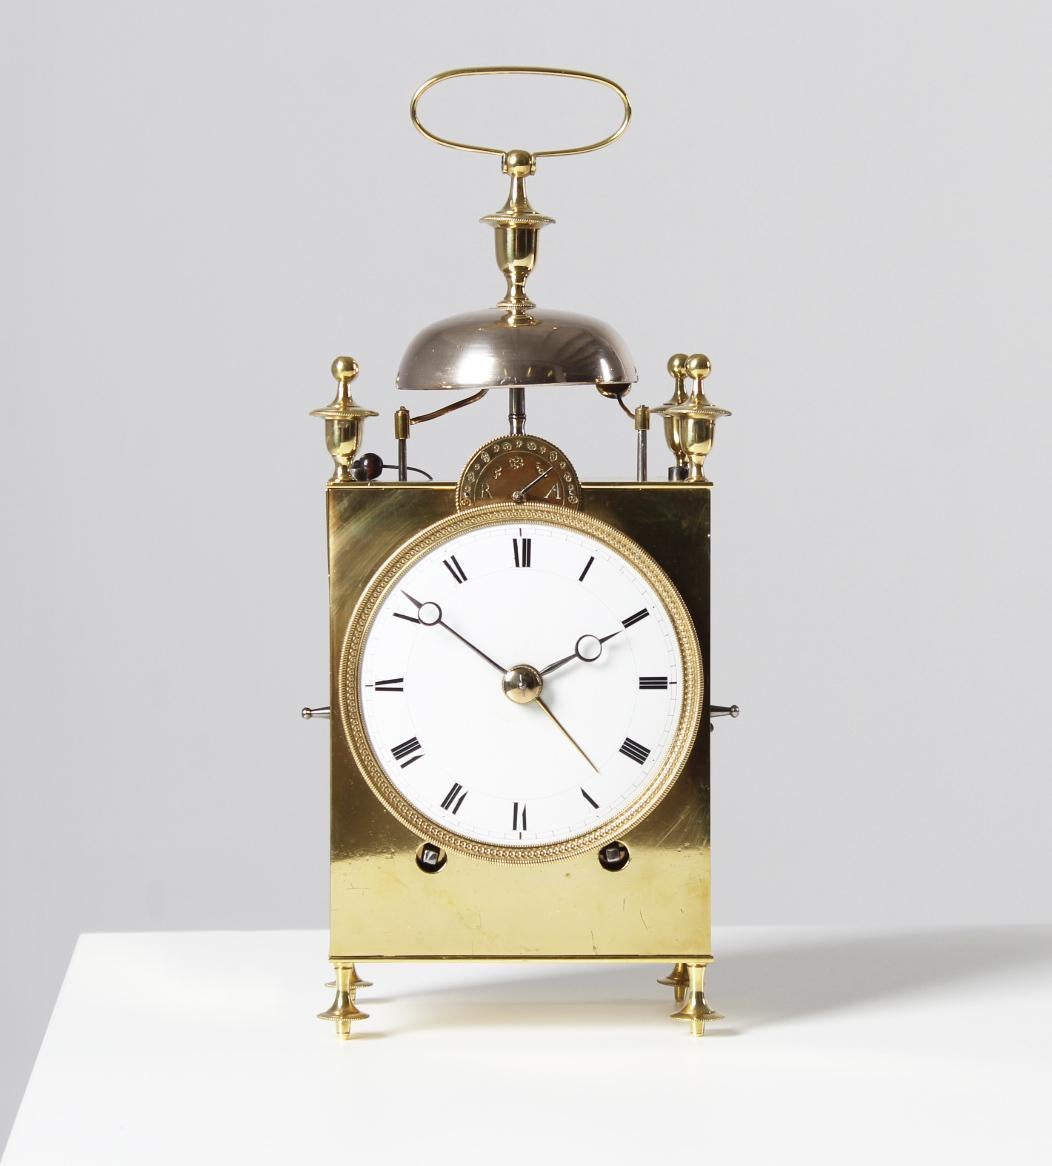 Antique Capucine travel clock

France
Brass, enamel
circa 1800

Dimensions: H x W x D: 29 x 12 x 8 cm

Description:
Antique travelling clock of the 